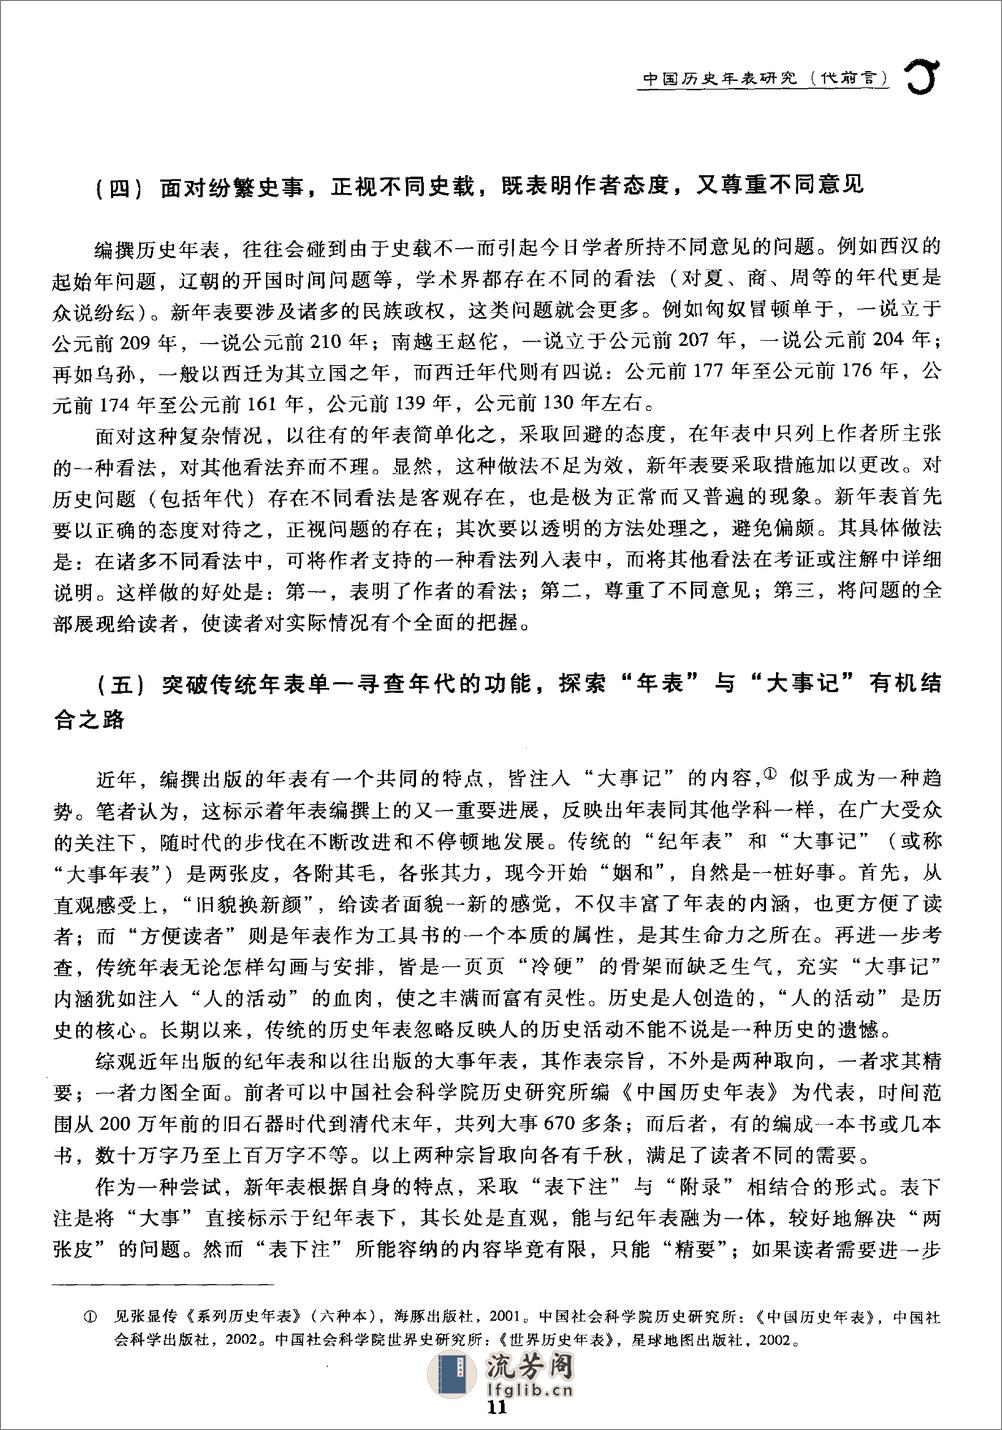 中华历史纪年总表·于宝林·社科文献2010 - 第11页预览图